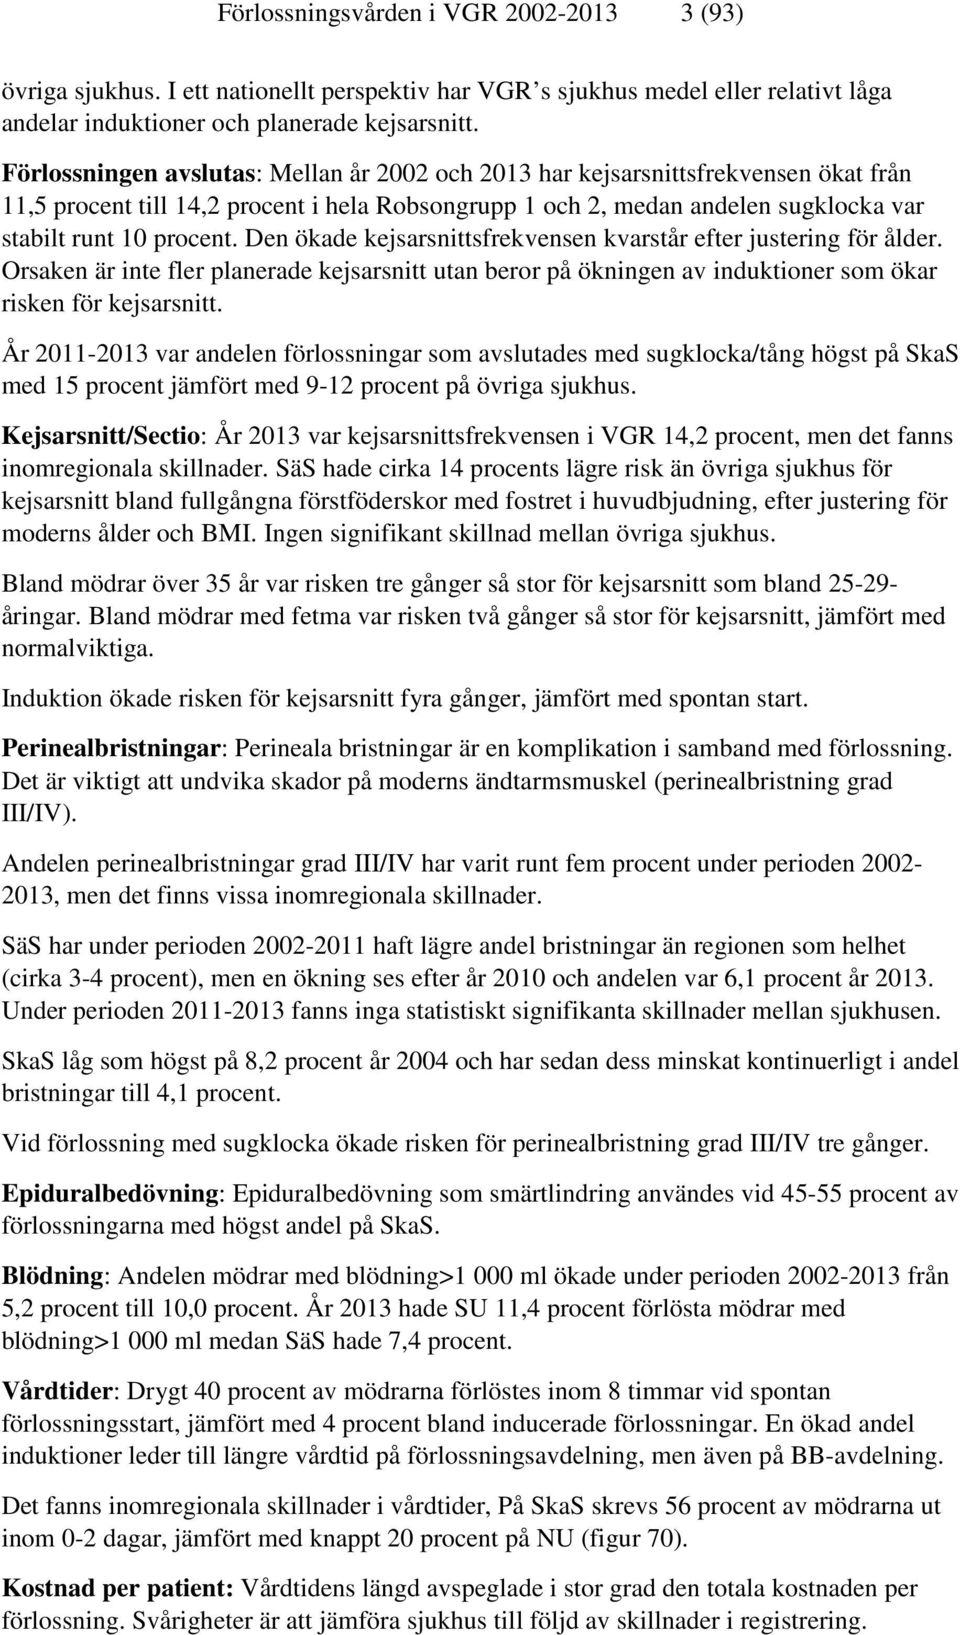 Förlossningsvården i Västra Götalandsregionen - PDF Free Download